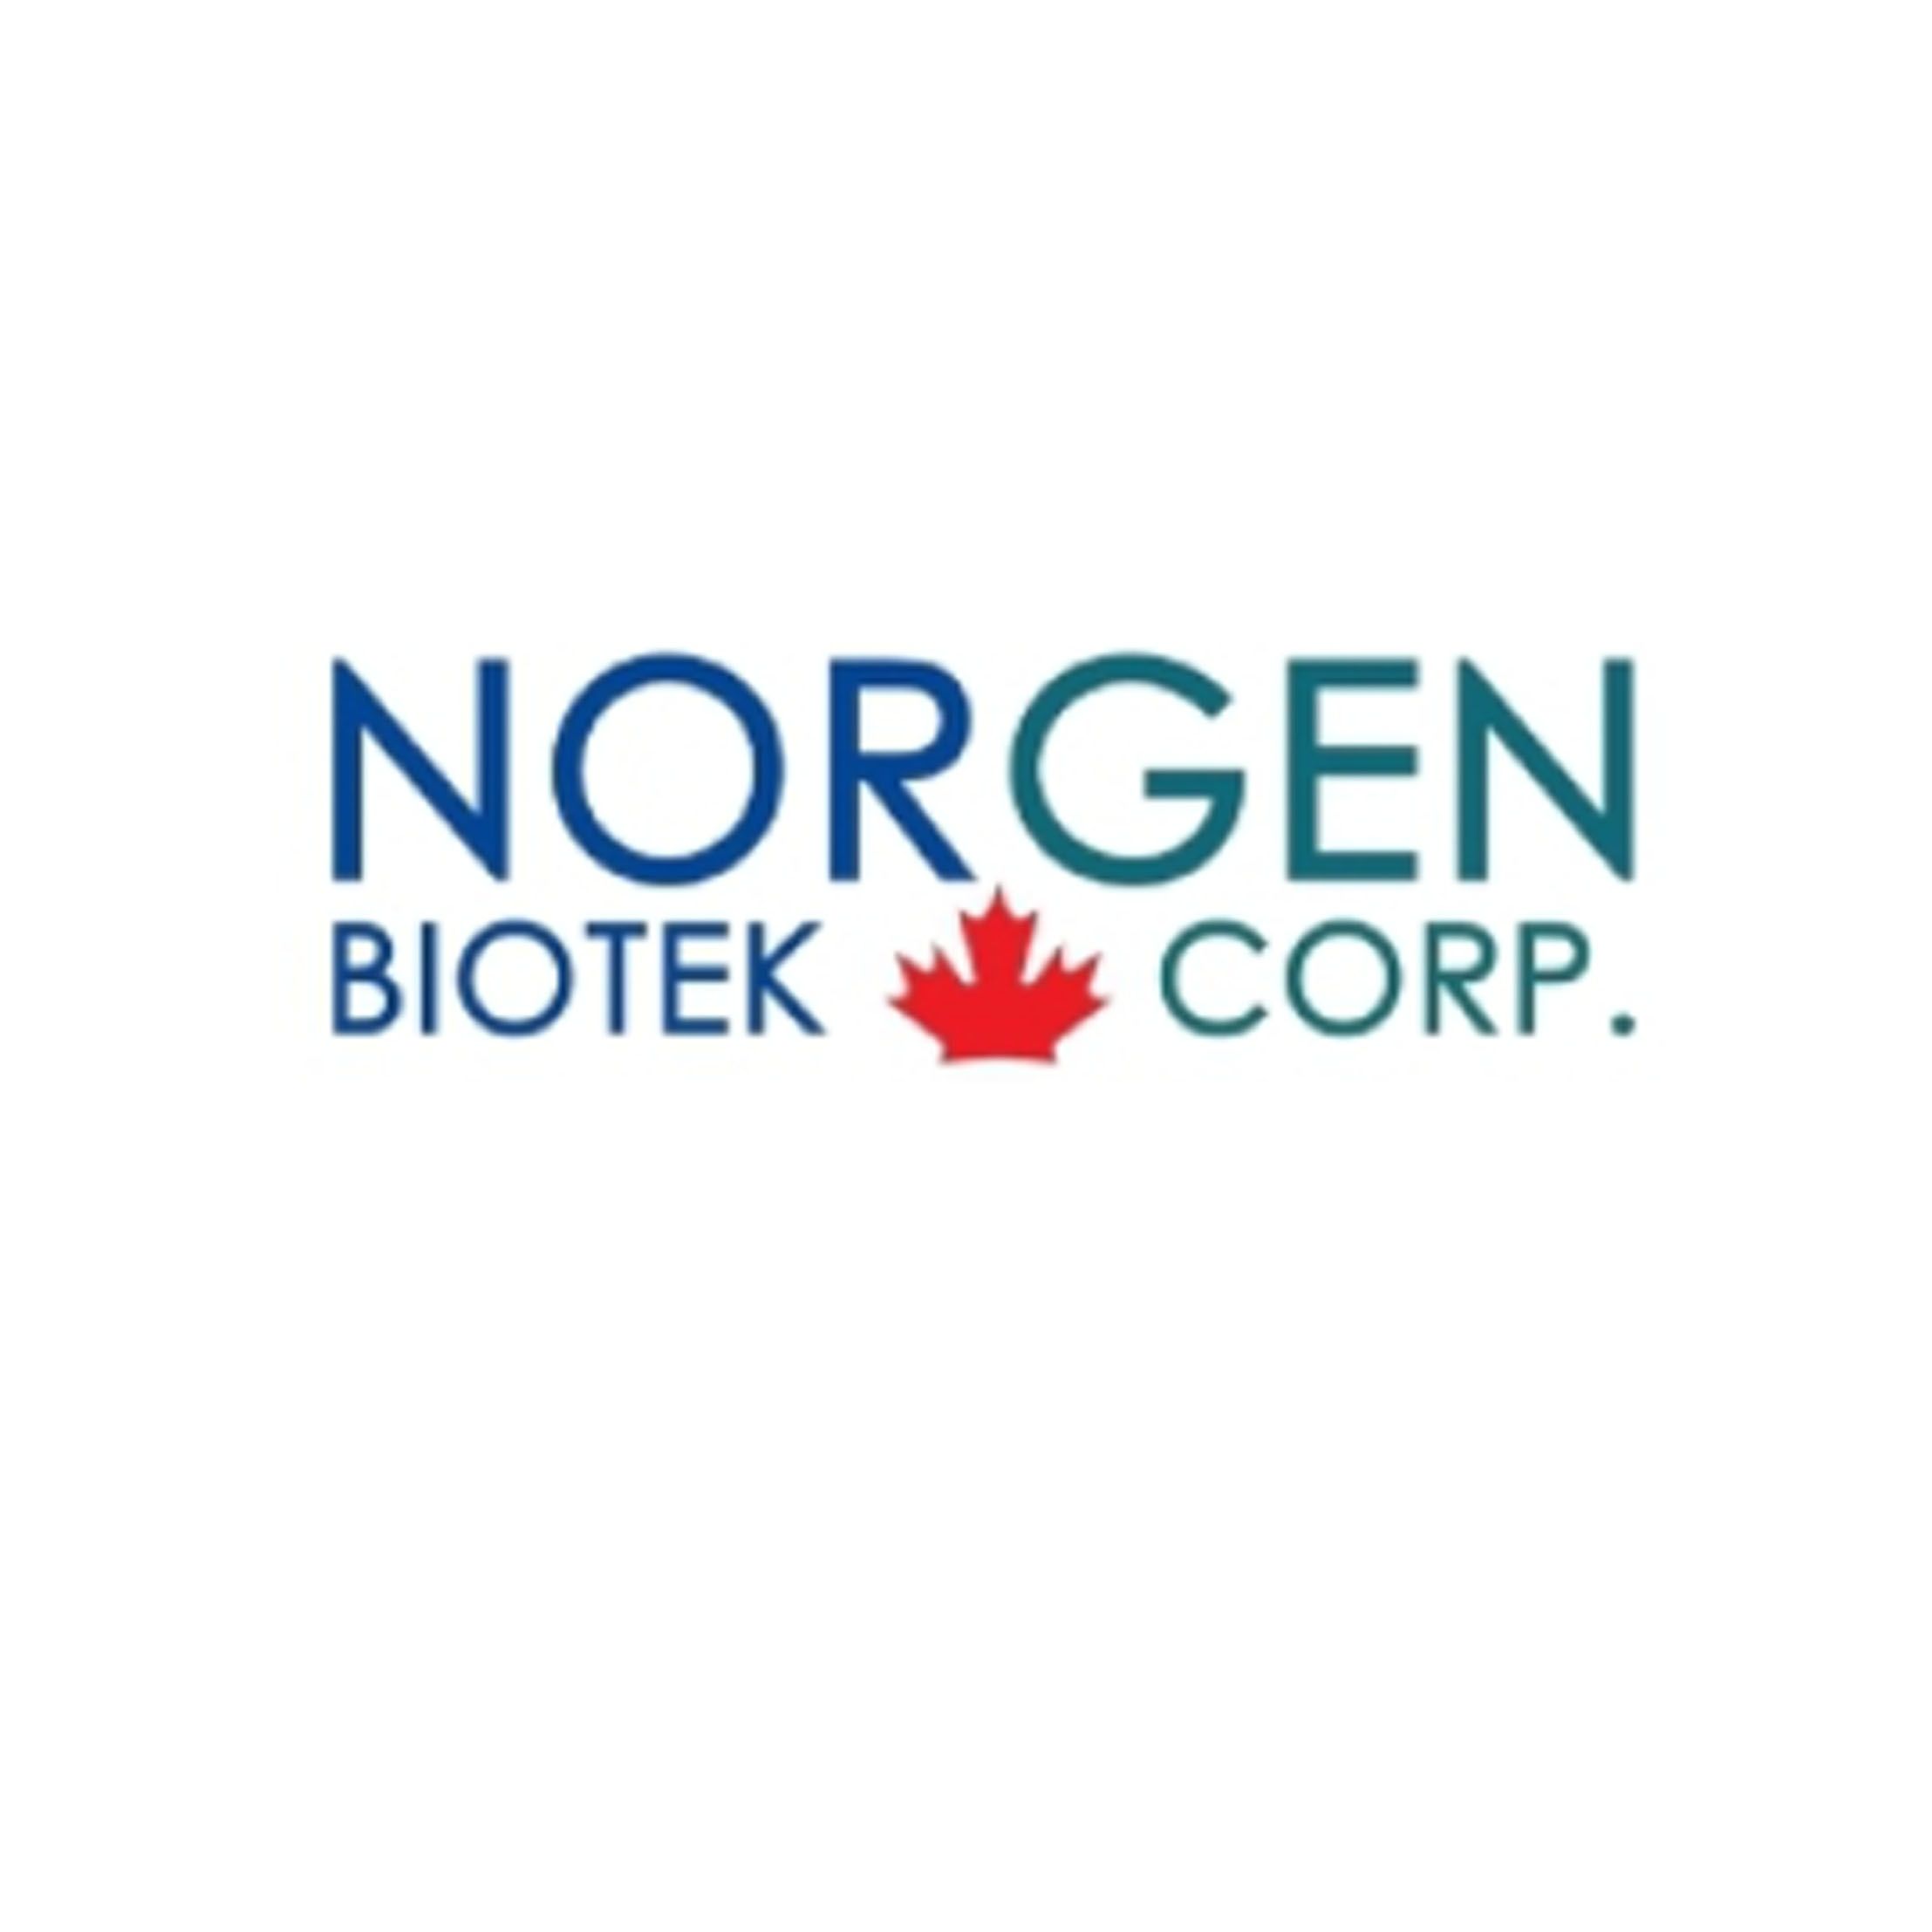 Norgen Biotek ABC法AP系统、免疫组化试剂盒、特色试剂盒